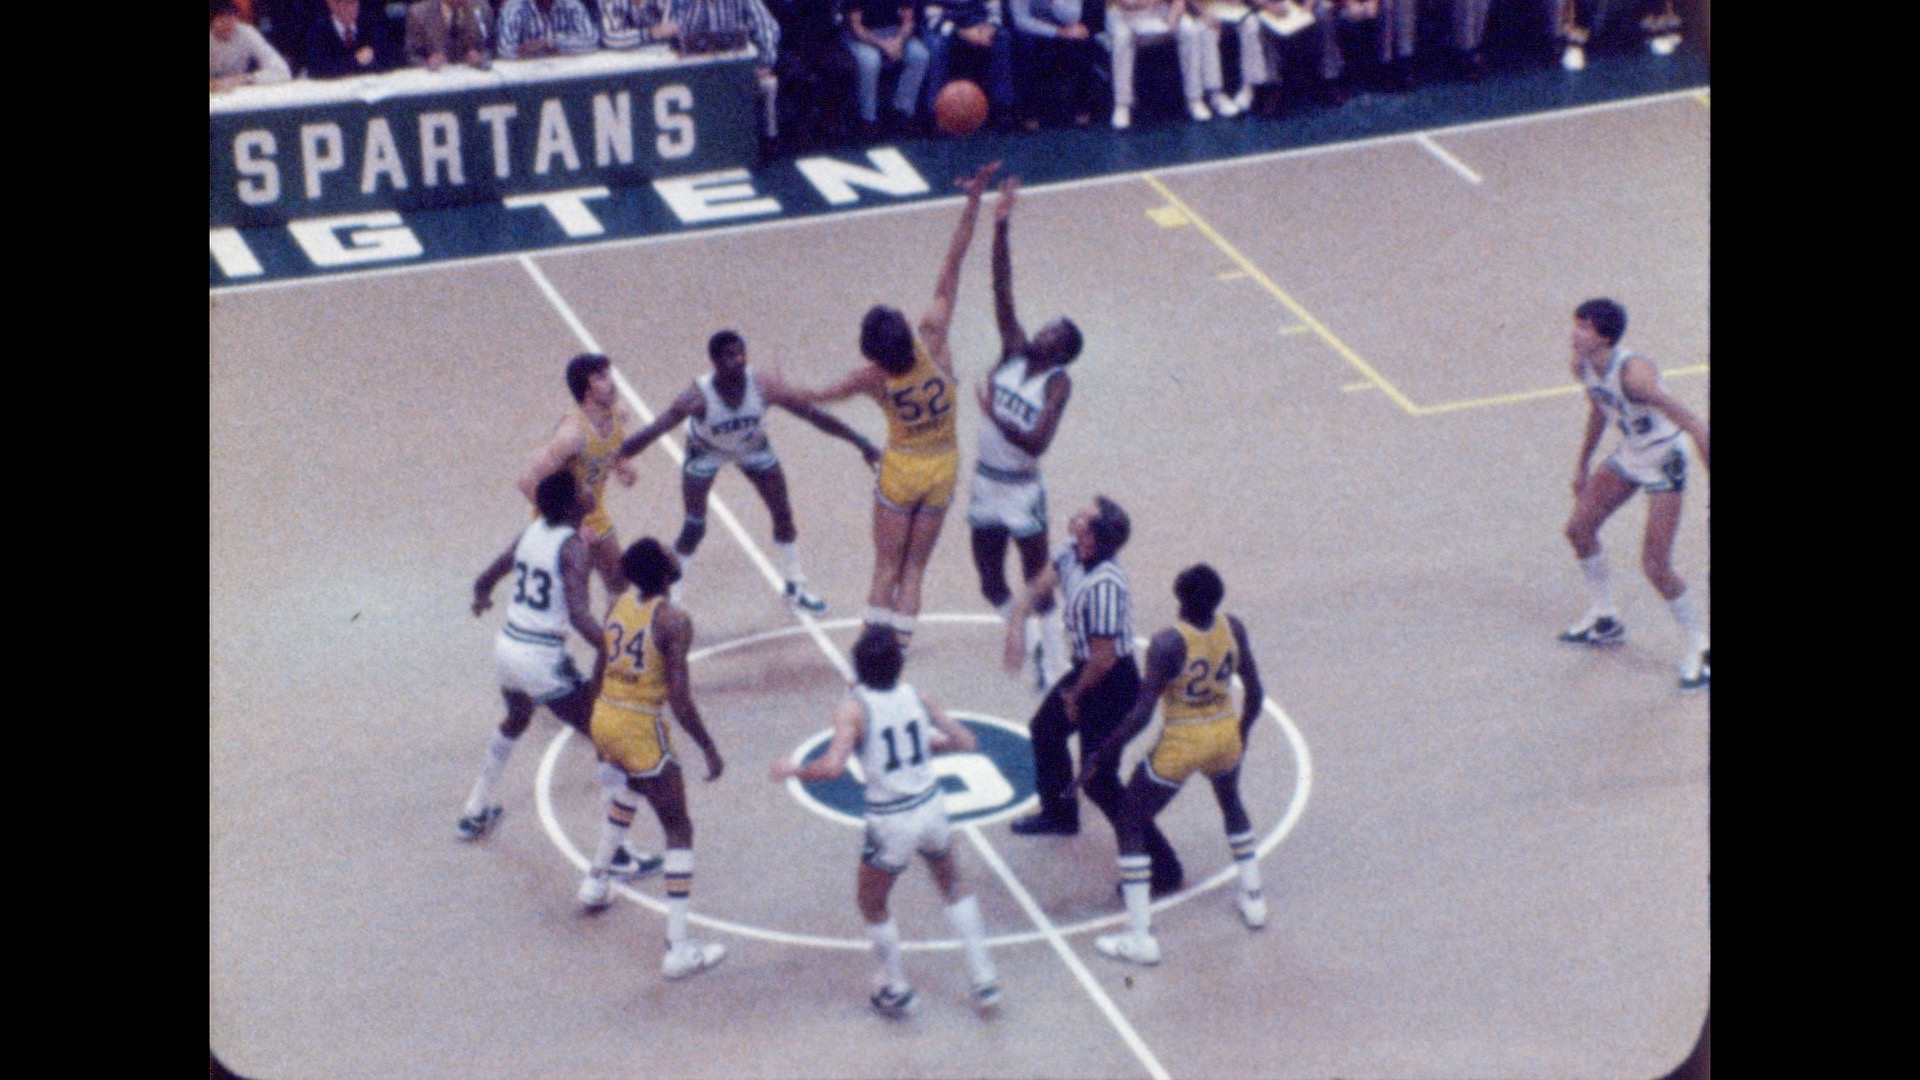 MSU Basketball vs. Central Michigan, 1977